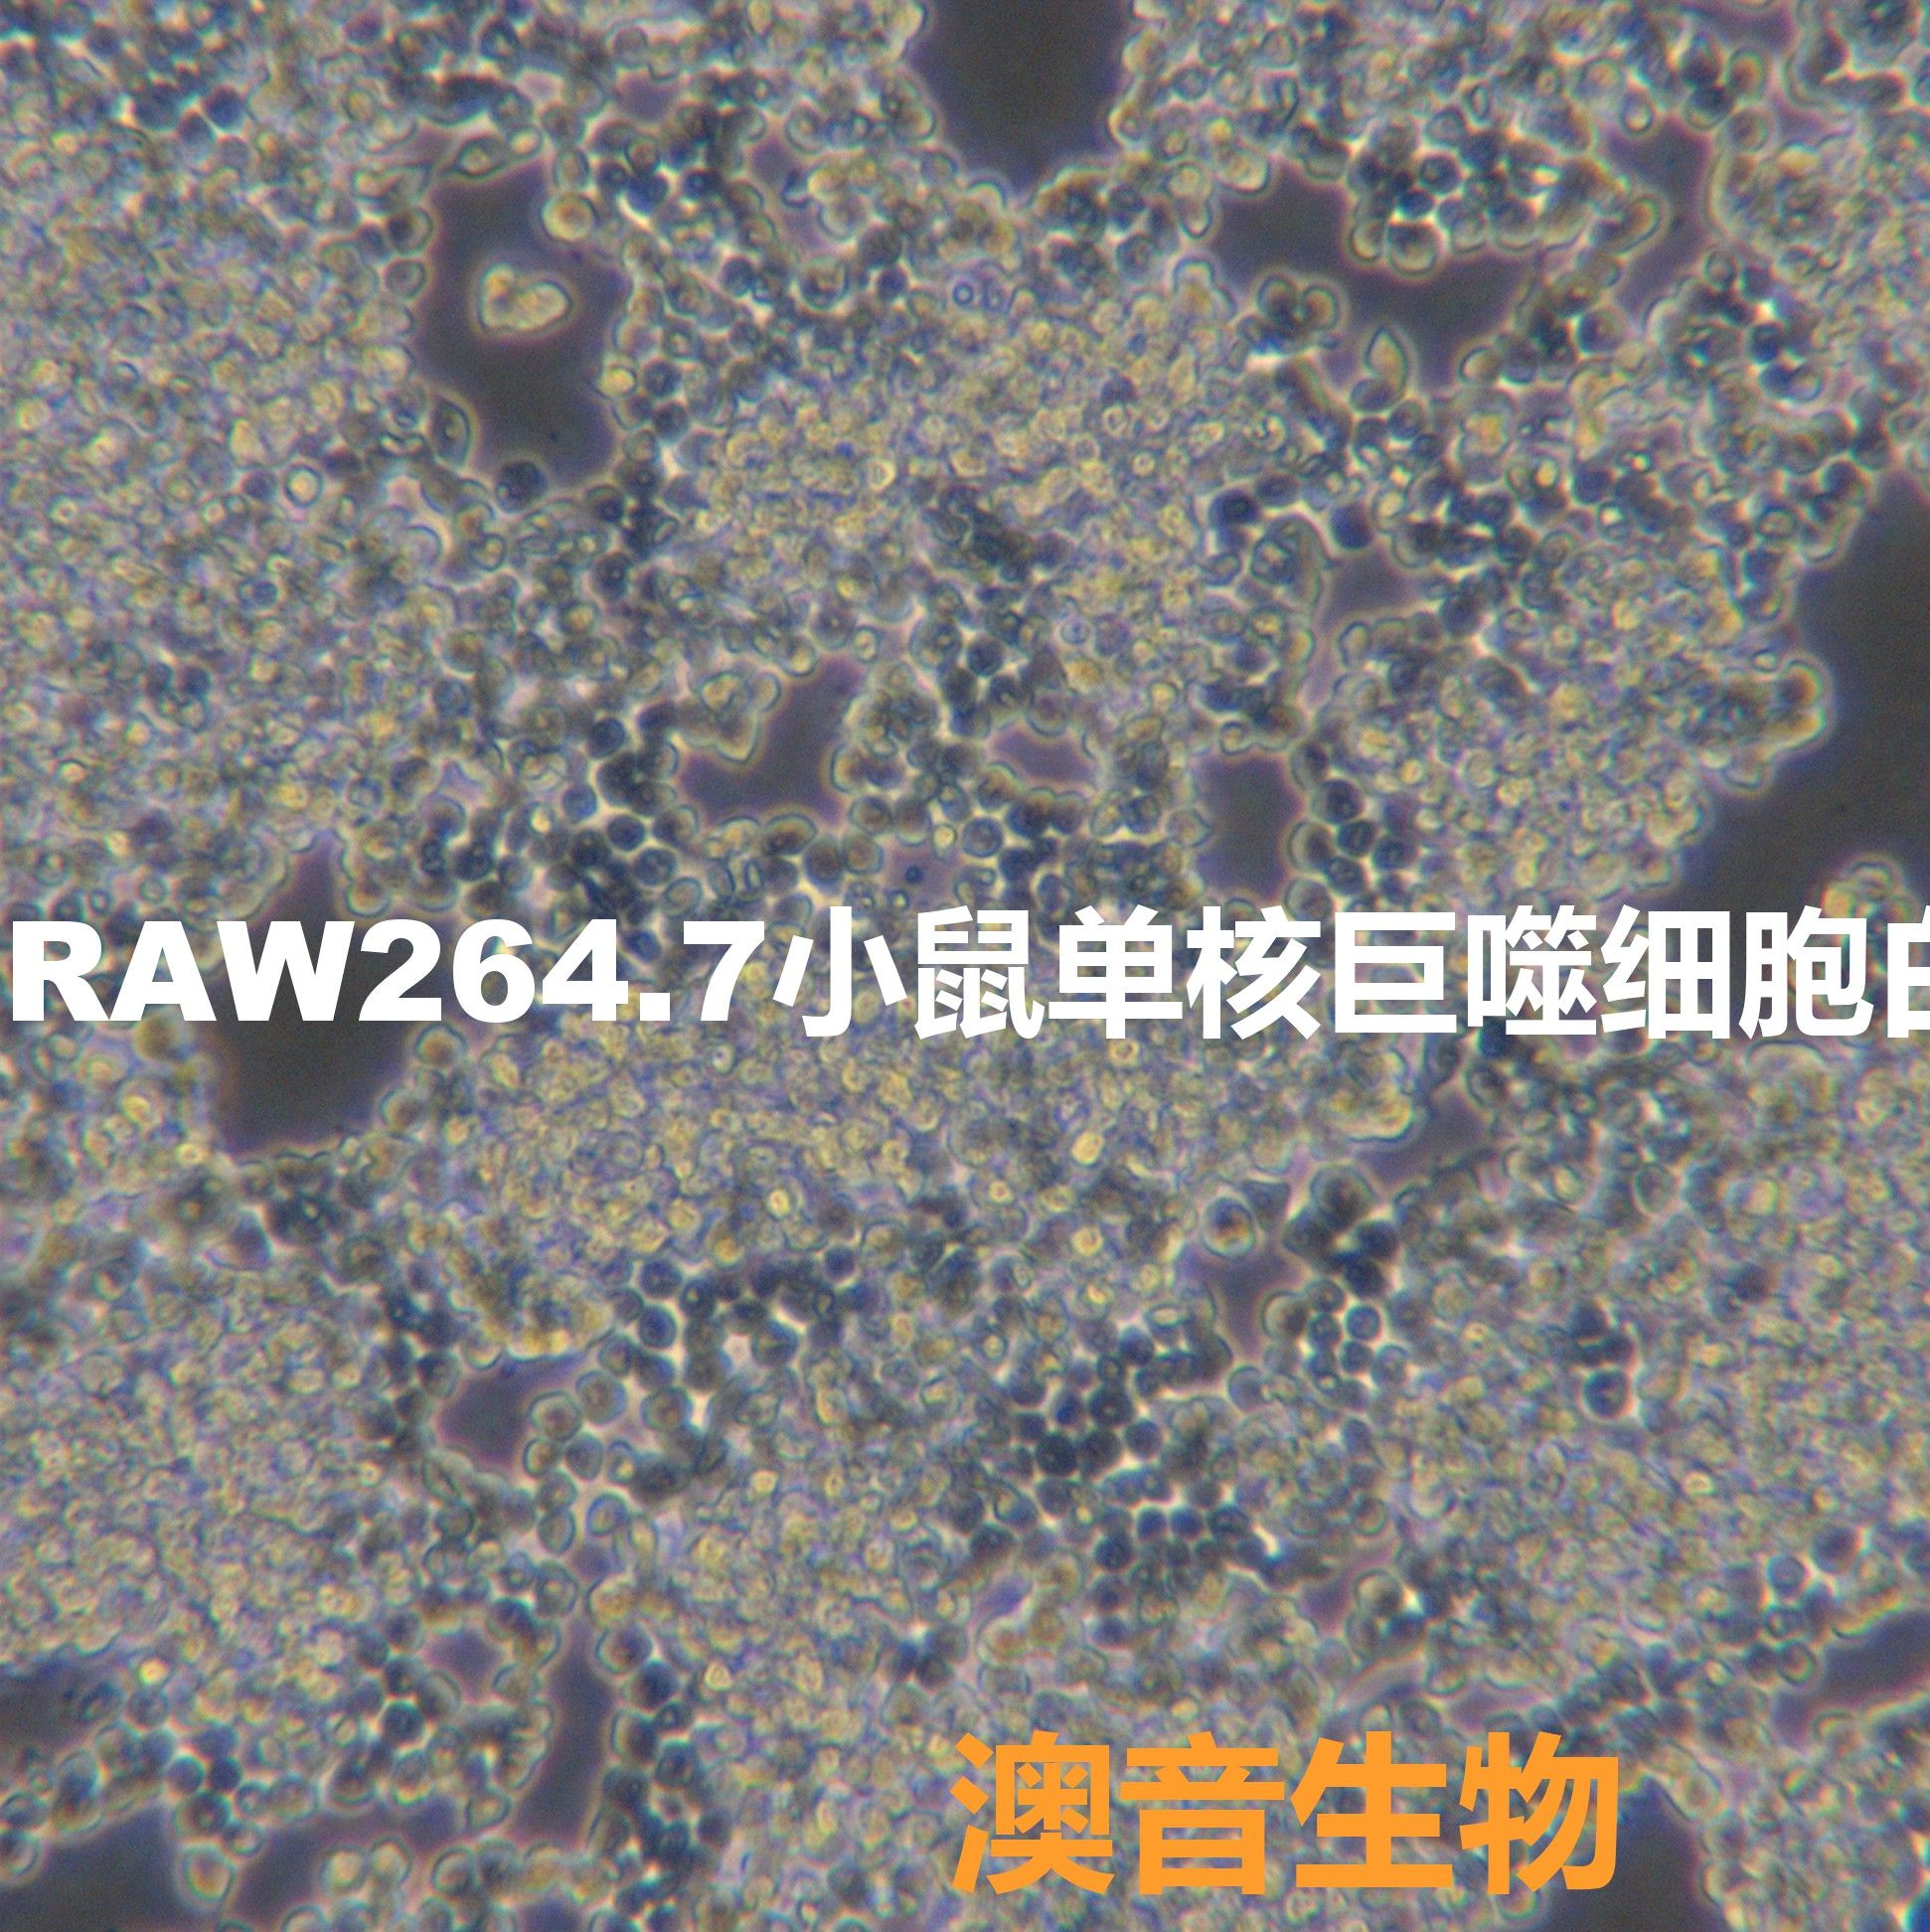 Raw264.7[RAW264; RAW2647; RAW264.7; RAW-264.7; Raw 264.7]小鼠单核巨噬细胞白血病细胞